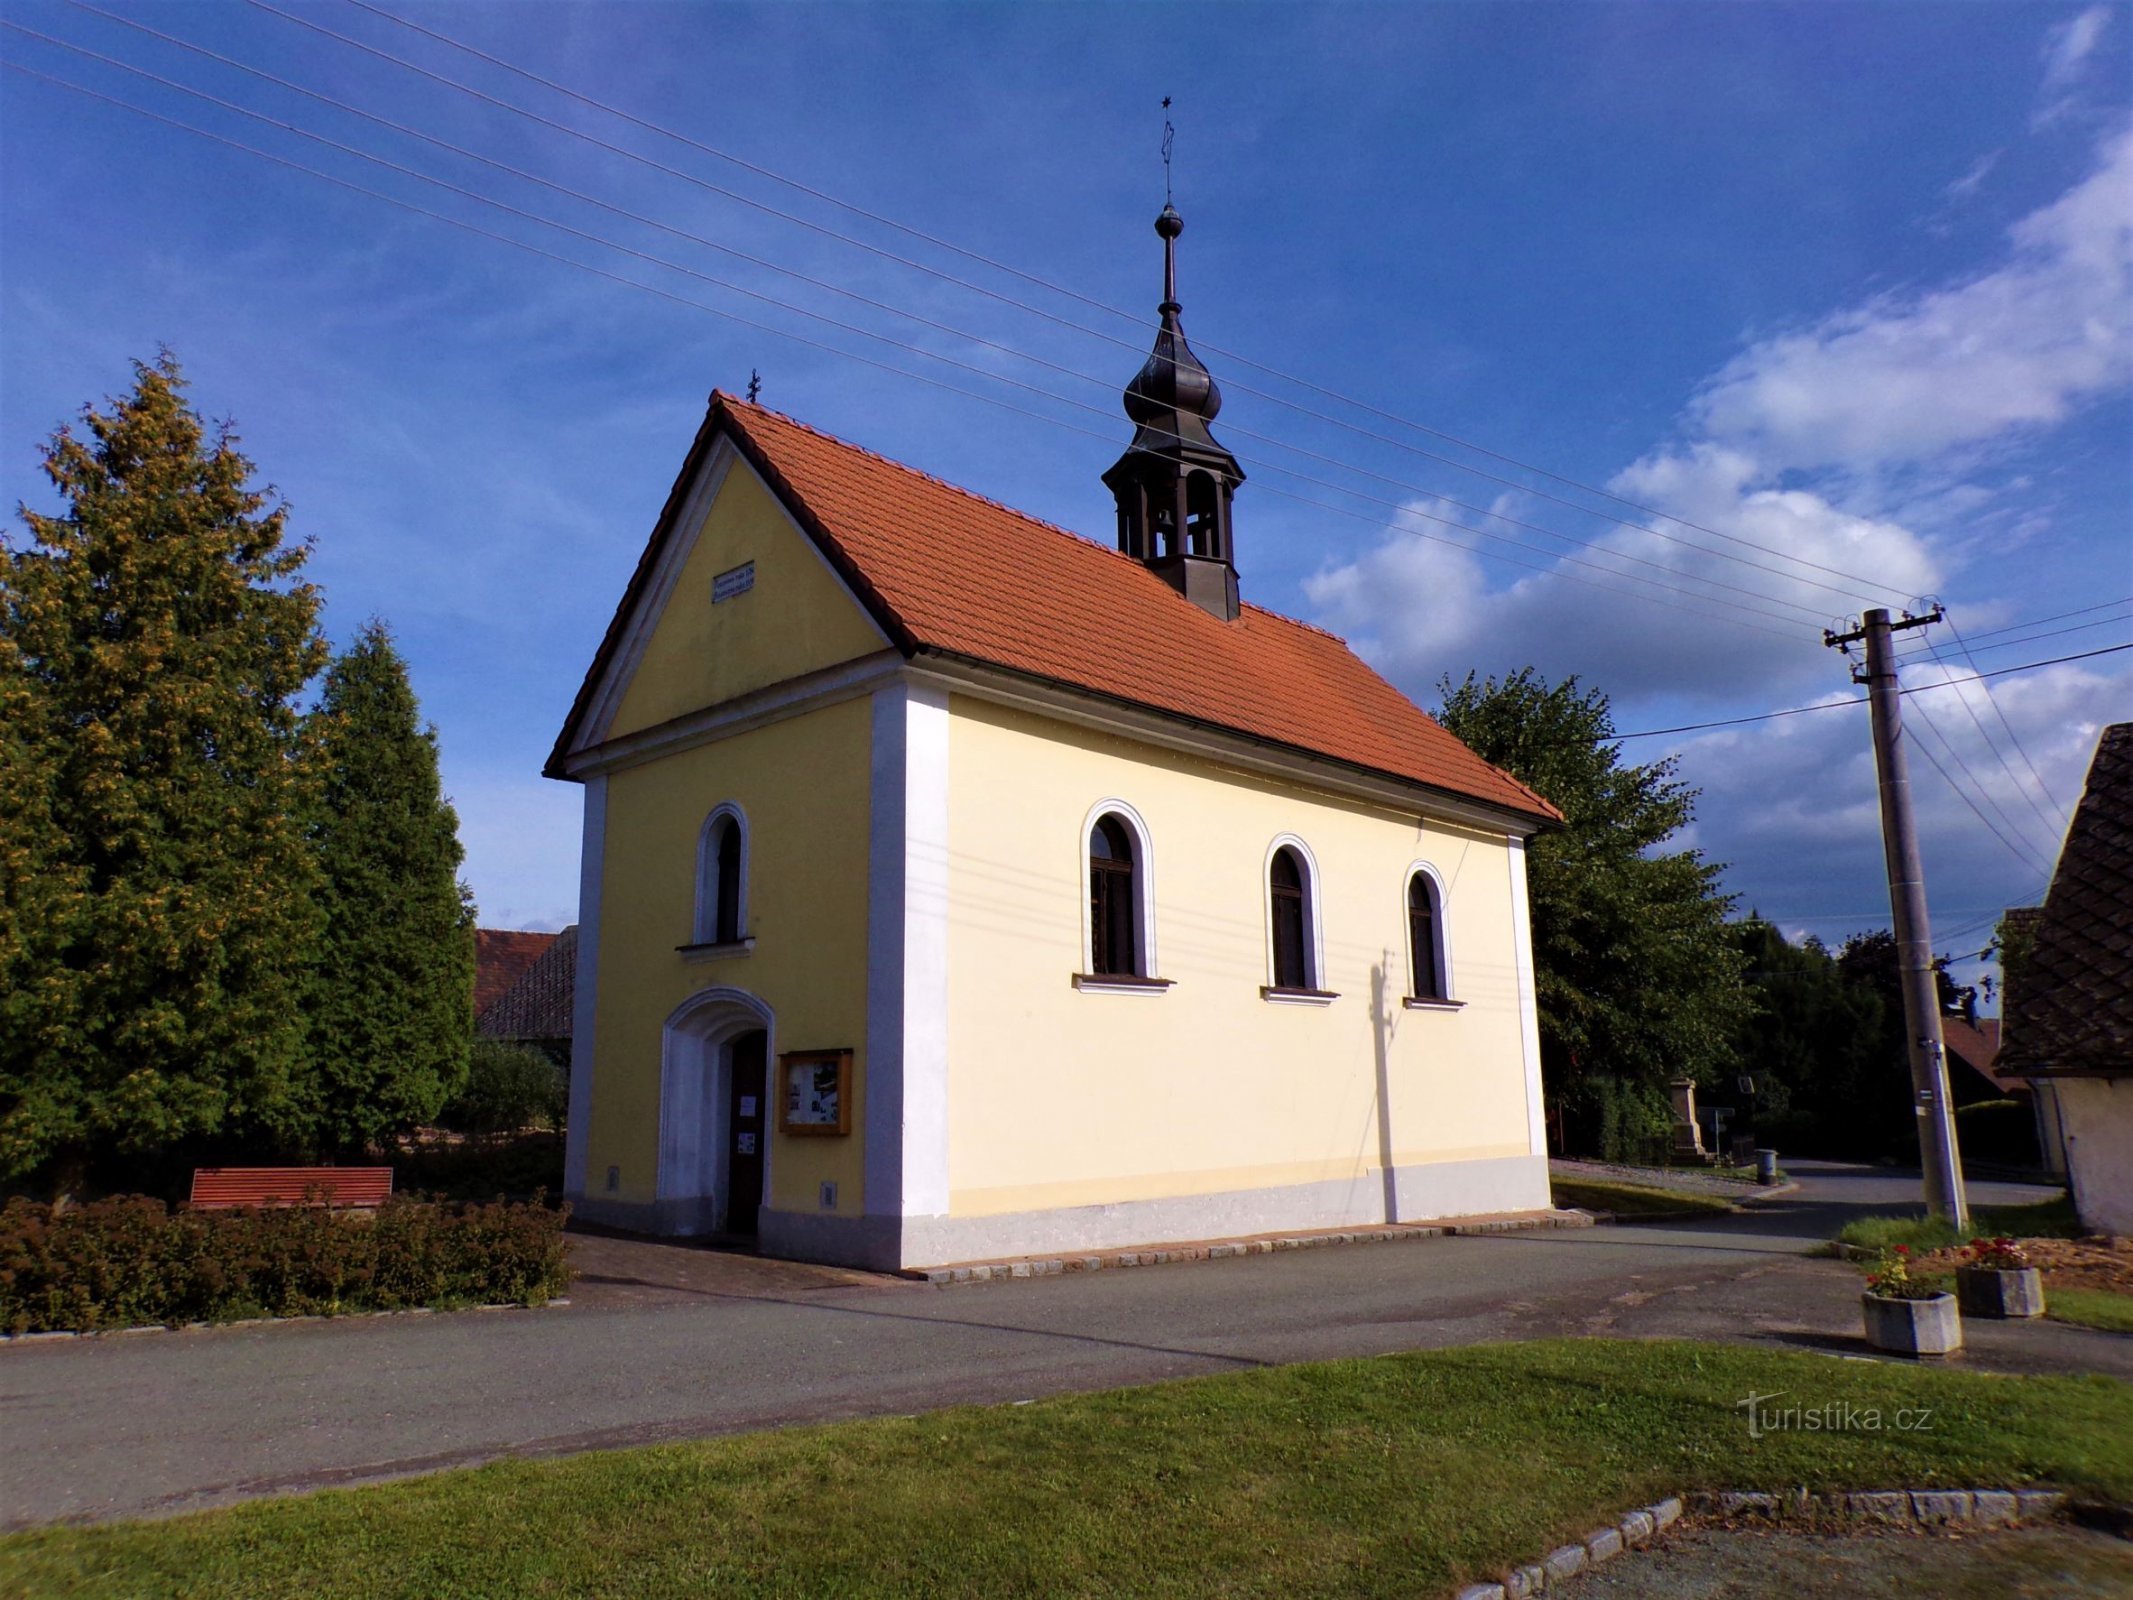 雪の聖母礼拝堂 (Žernov, 1.9.2021/XNUMX/XNUMX)